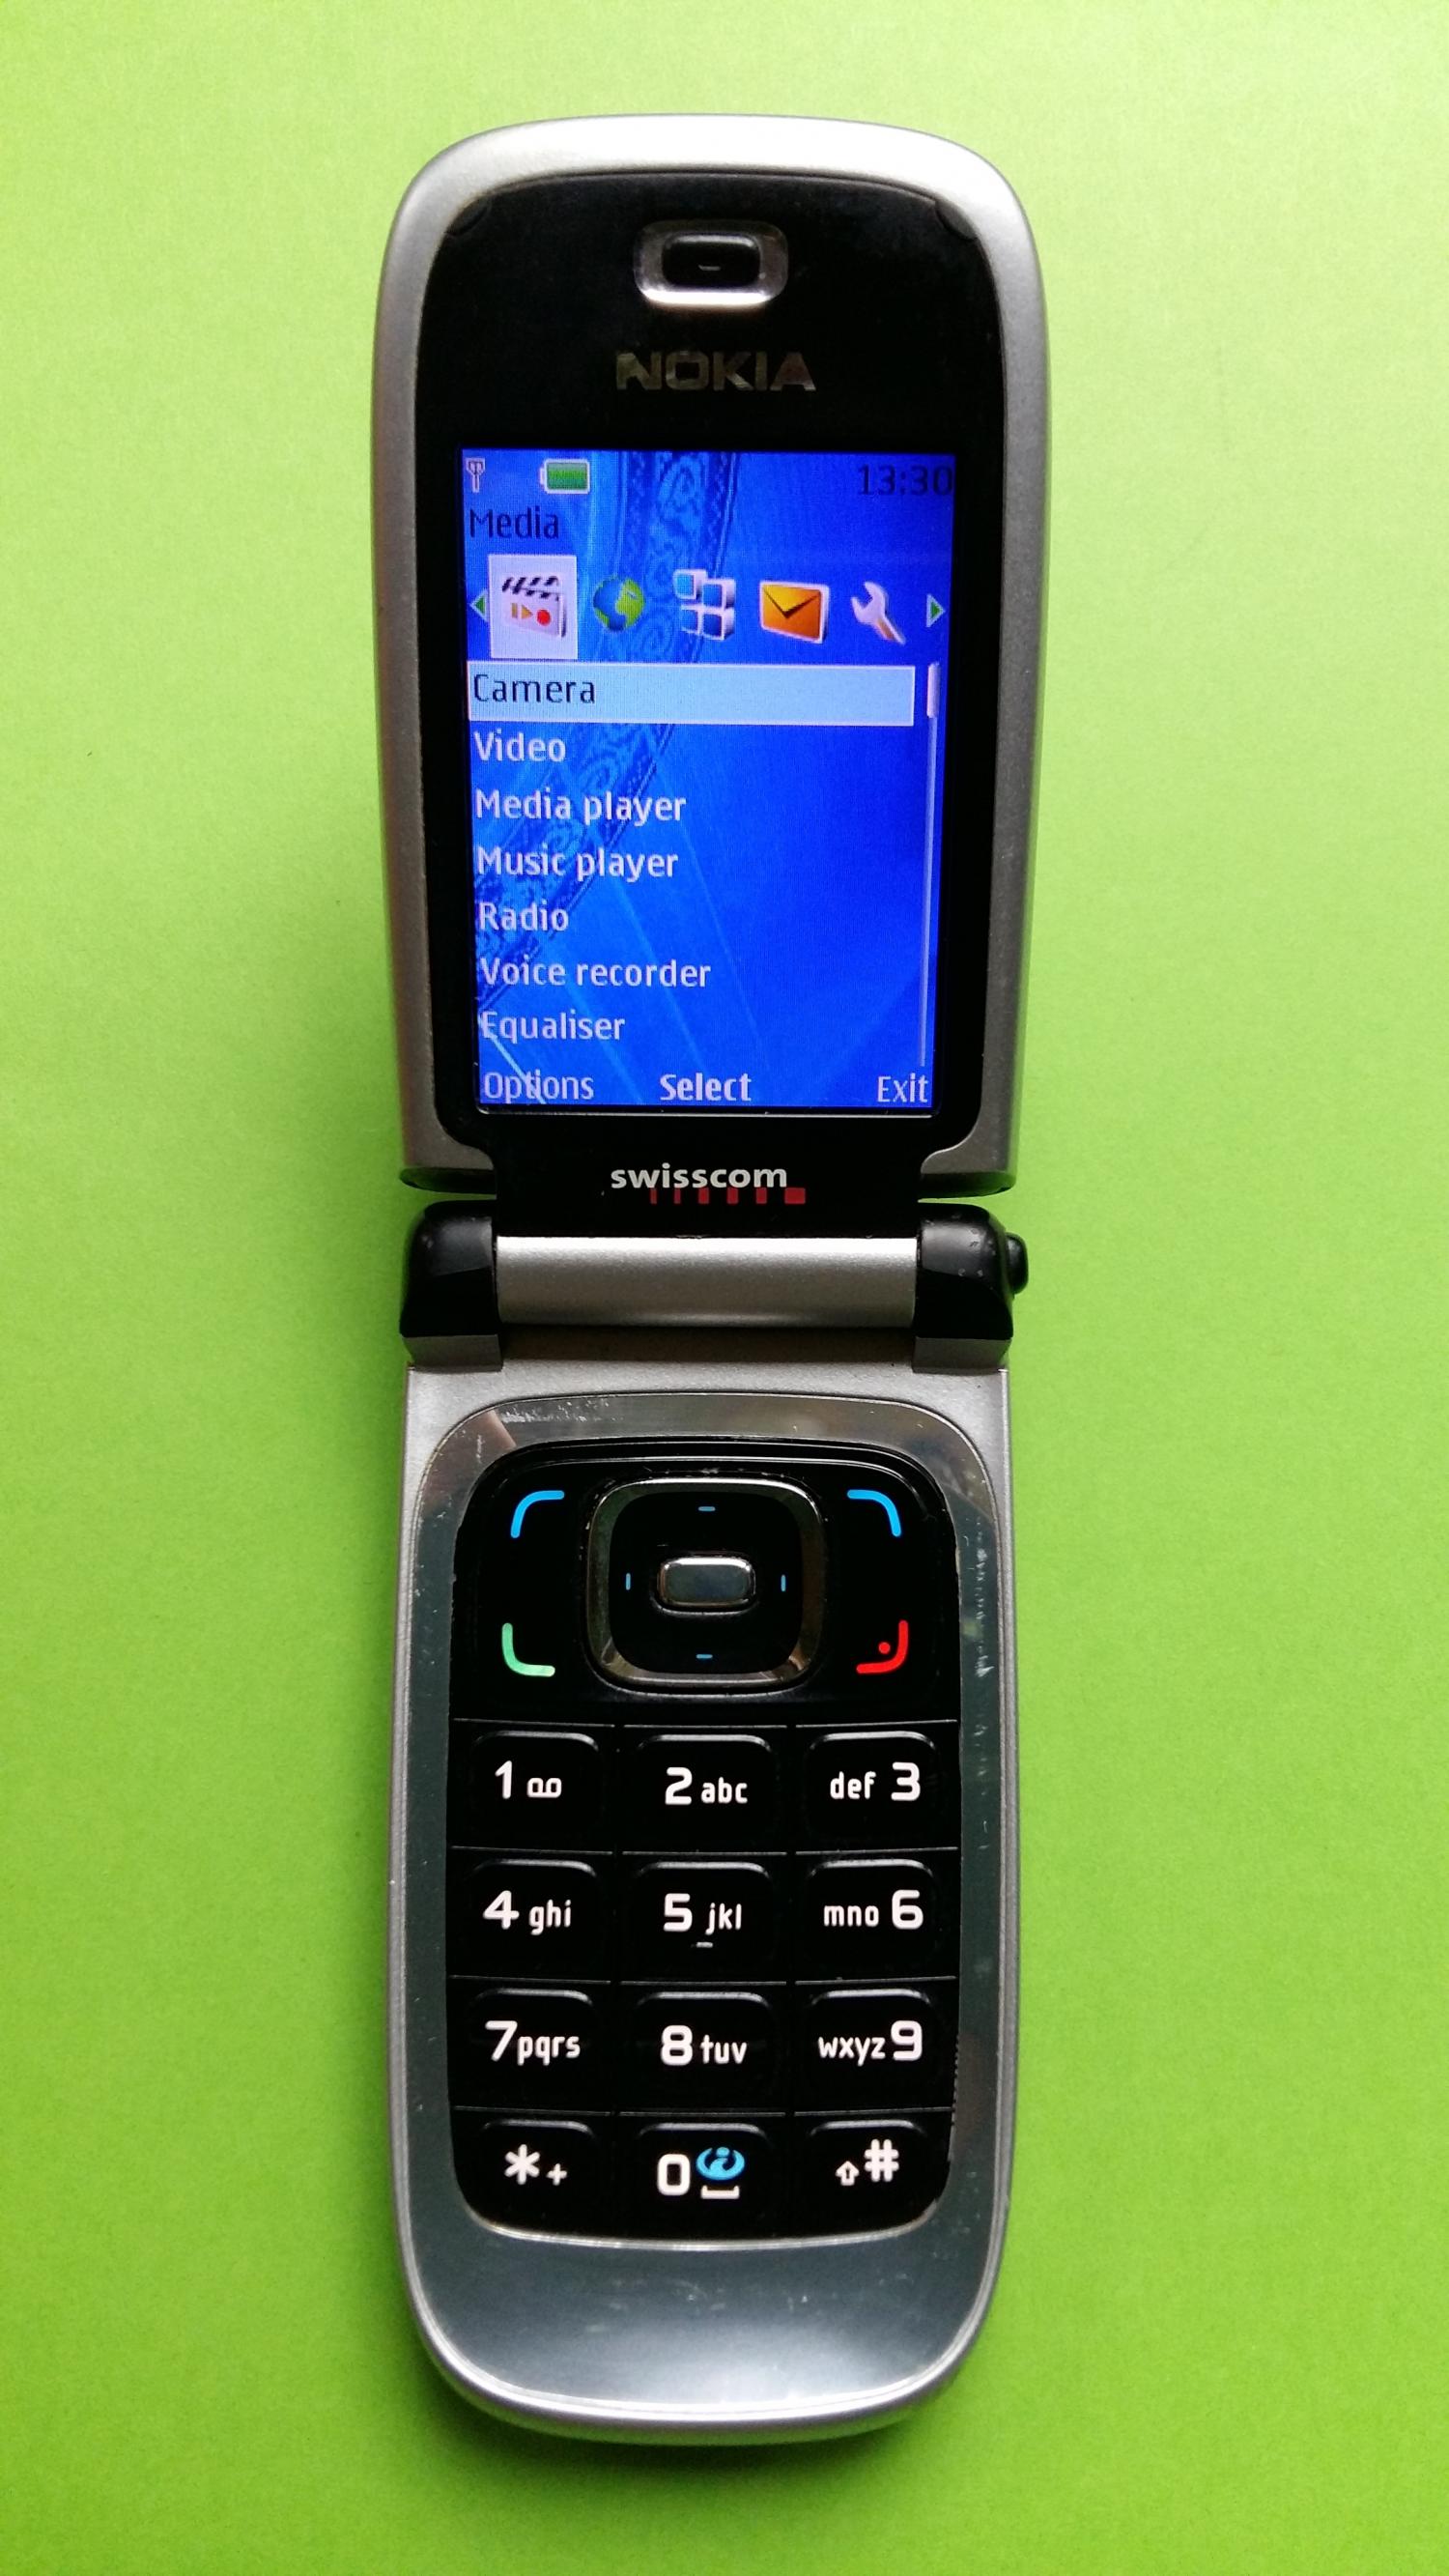 image-7305266-Nokia 6131 (12)2.jpg